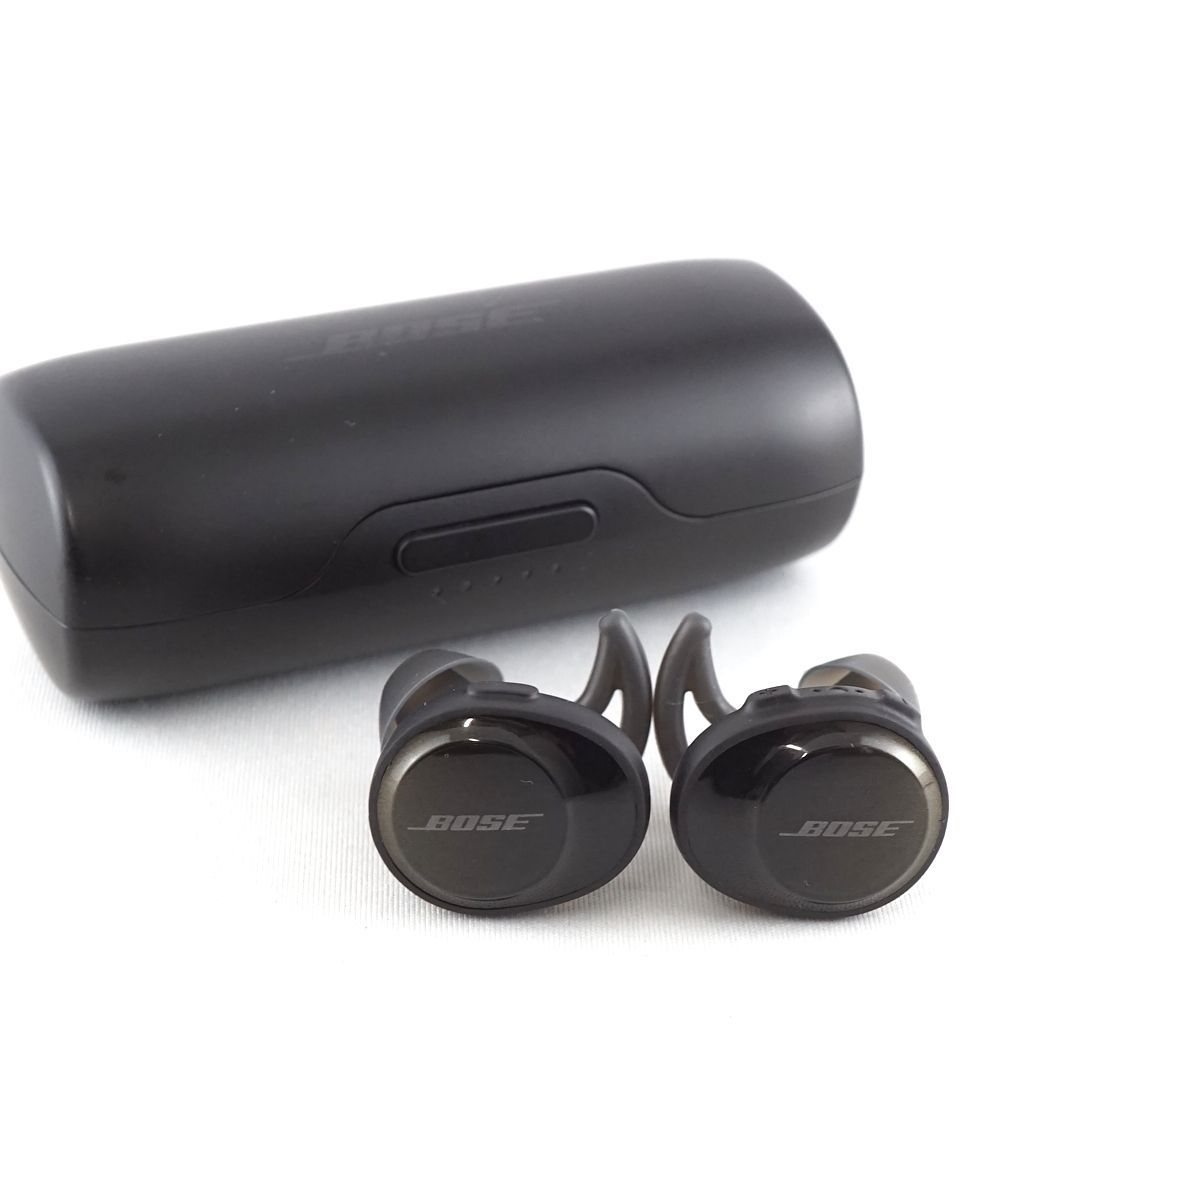 BOSE SoundSport Free Wireless Headphones 完全ワイヤレスイヤホン USED美品 Bluetooth 防滴  IPX4 マイク ブラック 完動品 S V9279